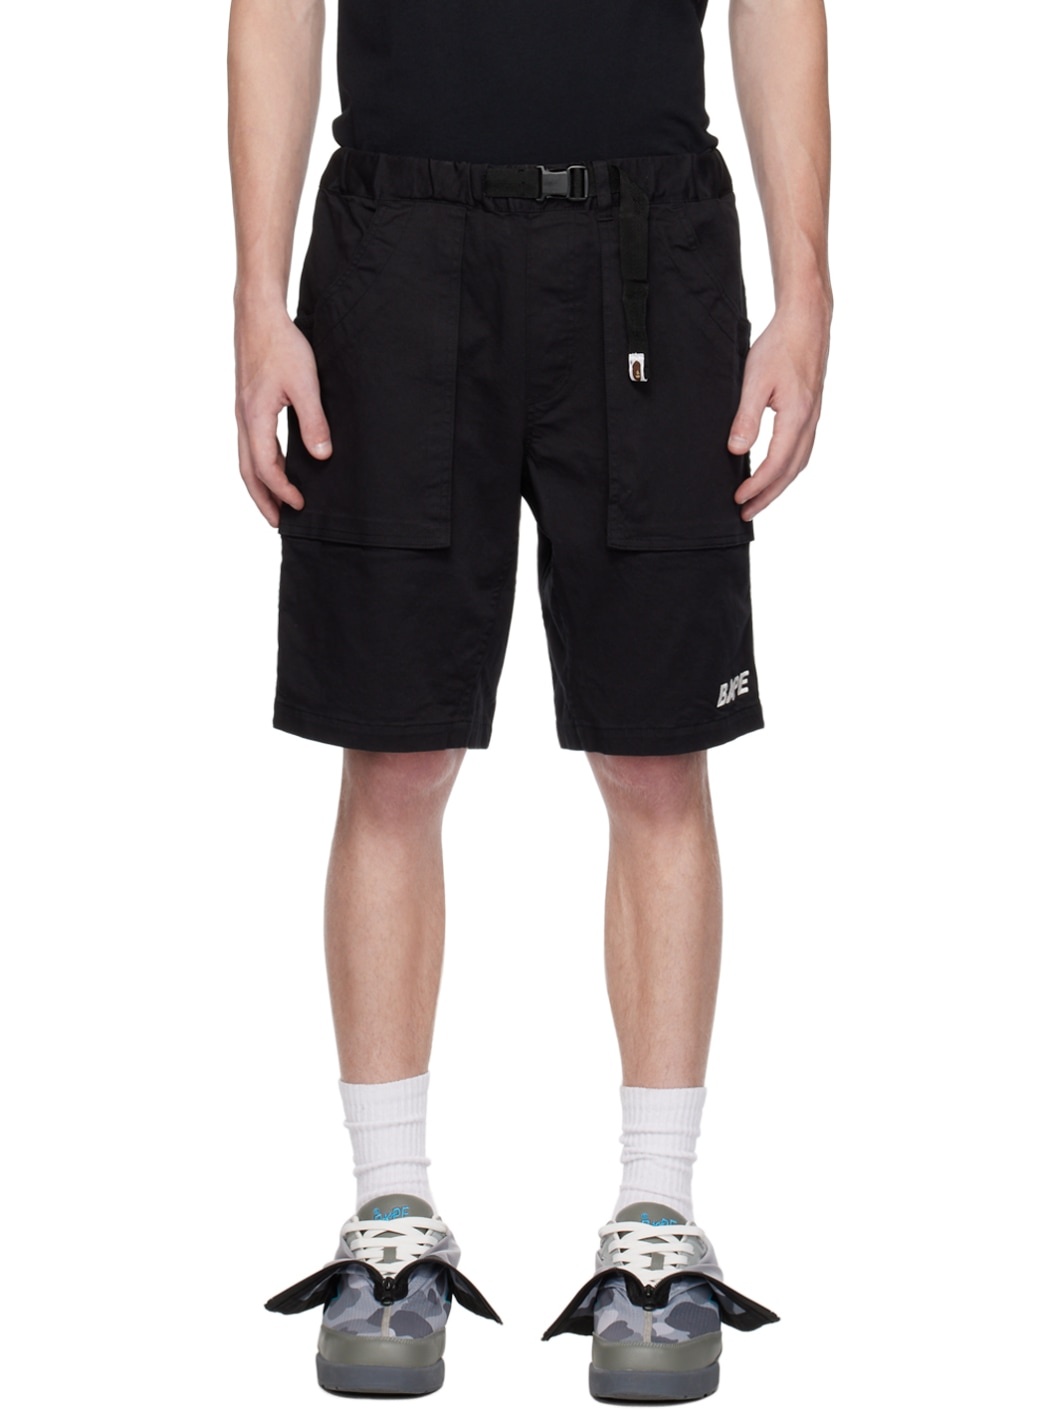 Black Belted Shorts - 1